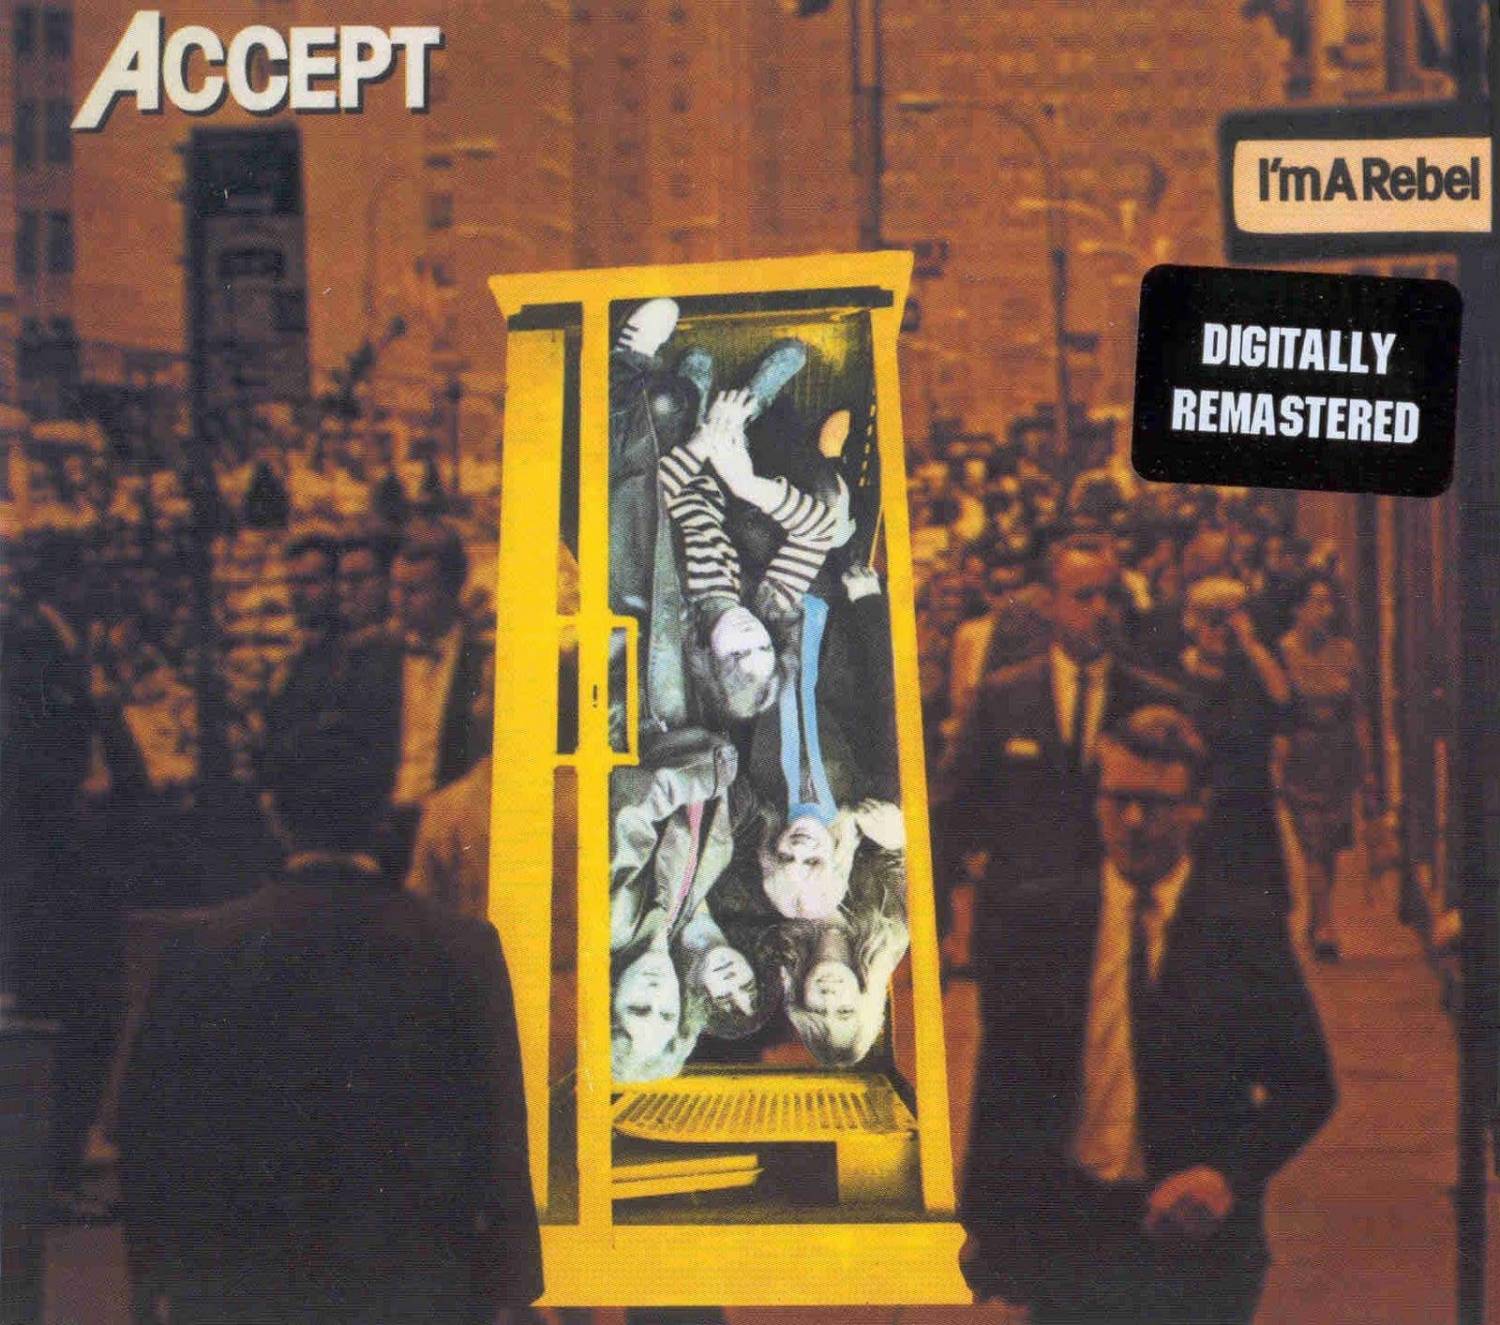  Accept - I'm A Rebel (1980)